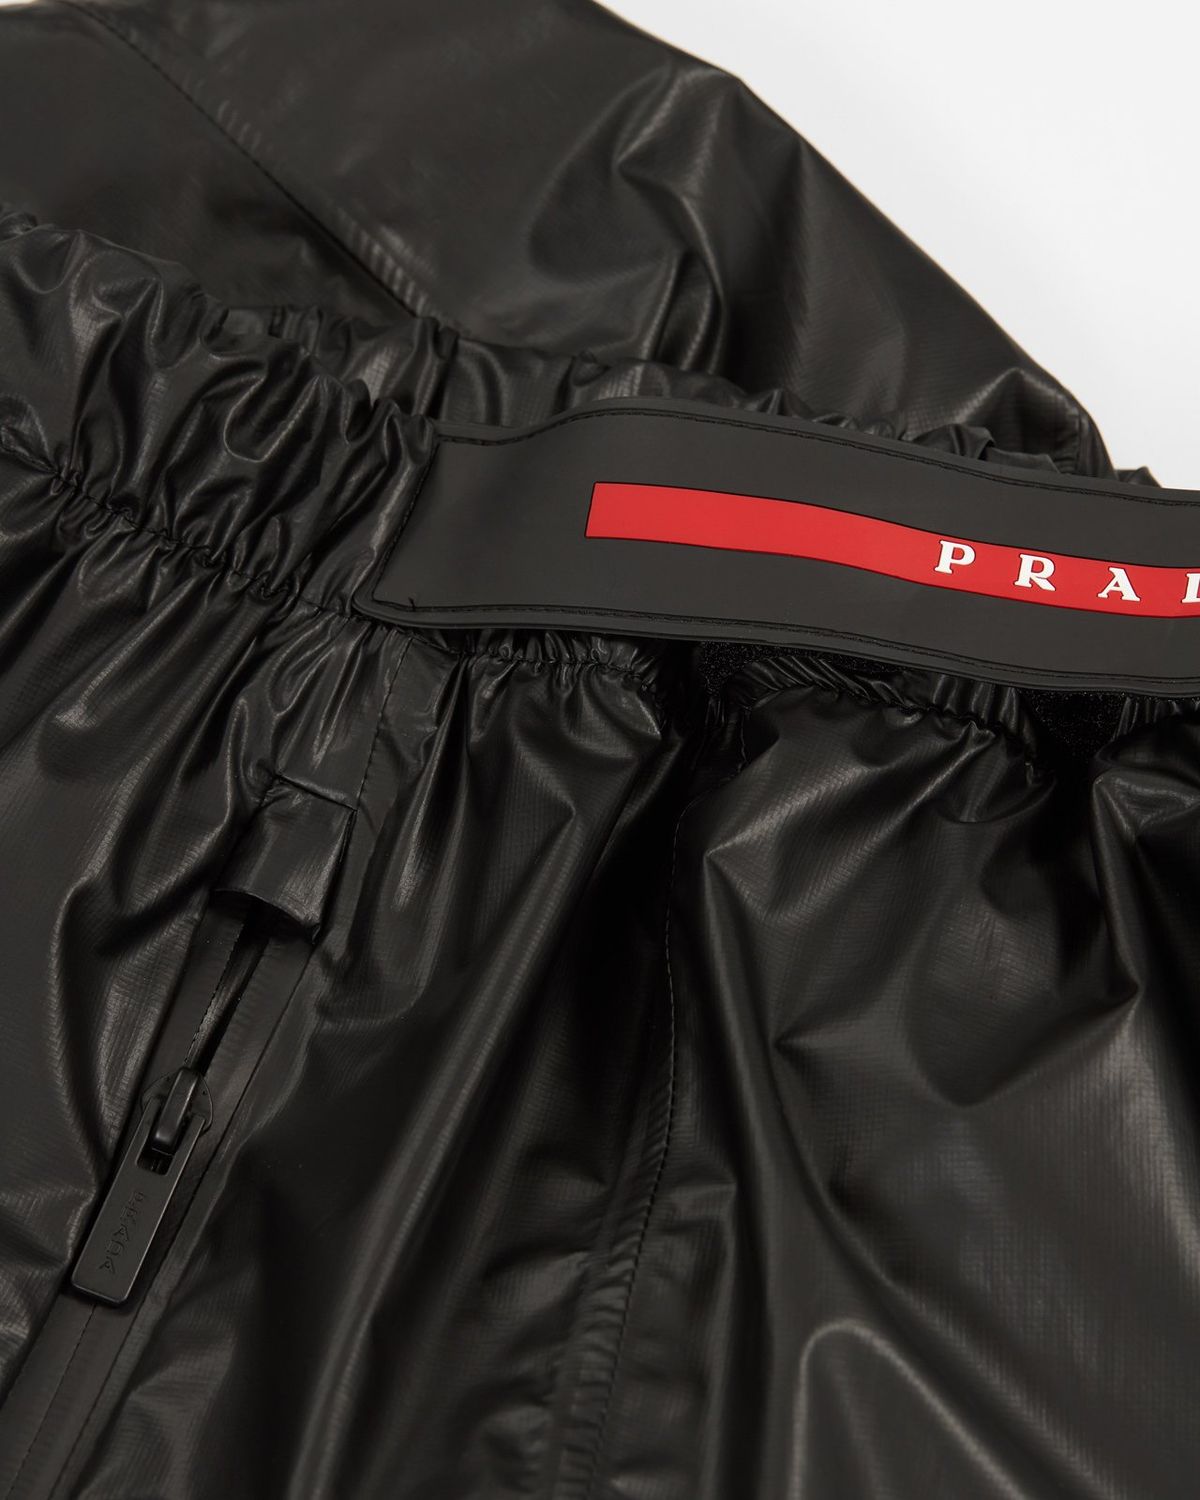 Prada – Men's Shiny Nylon Track Pants | Highsnobiety Shop